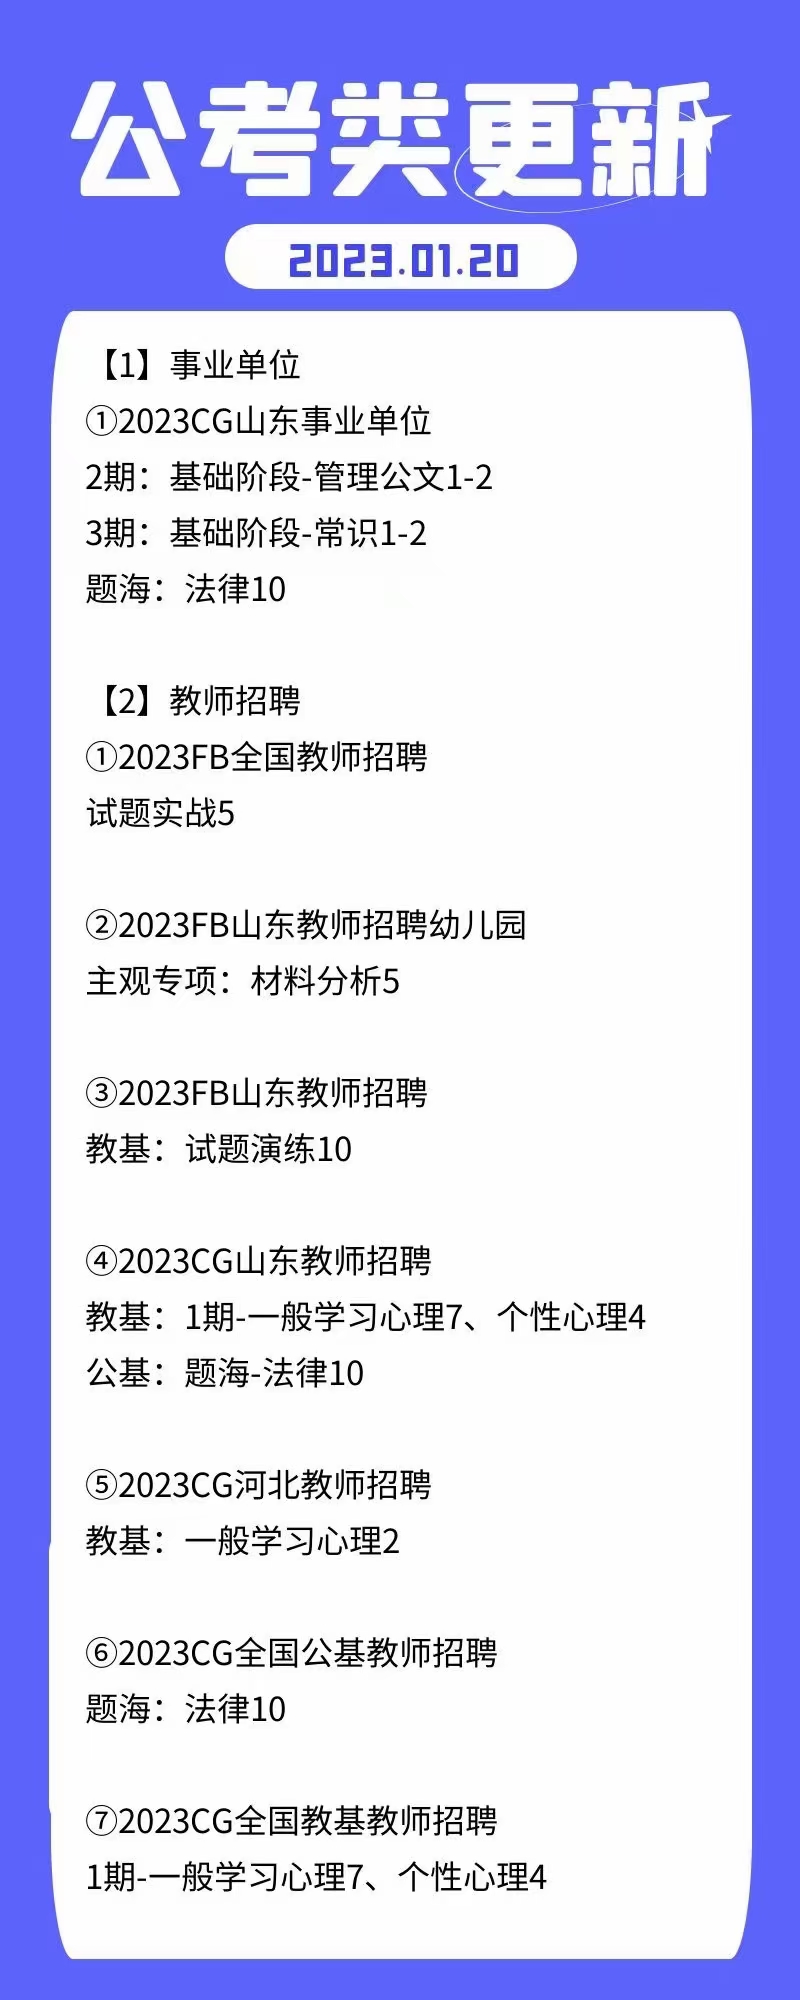 萌学院区01月20号更新 公务员2023 事业单位2022 教师招聘2023